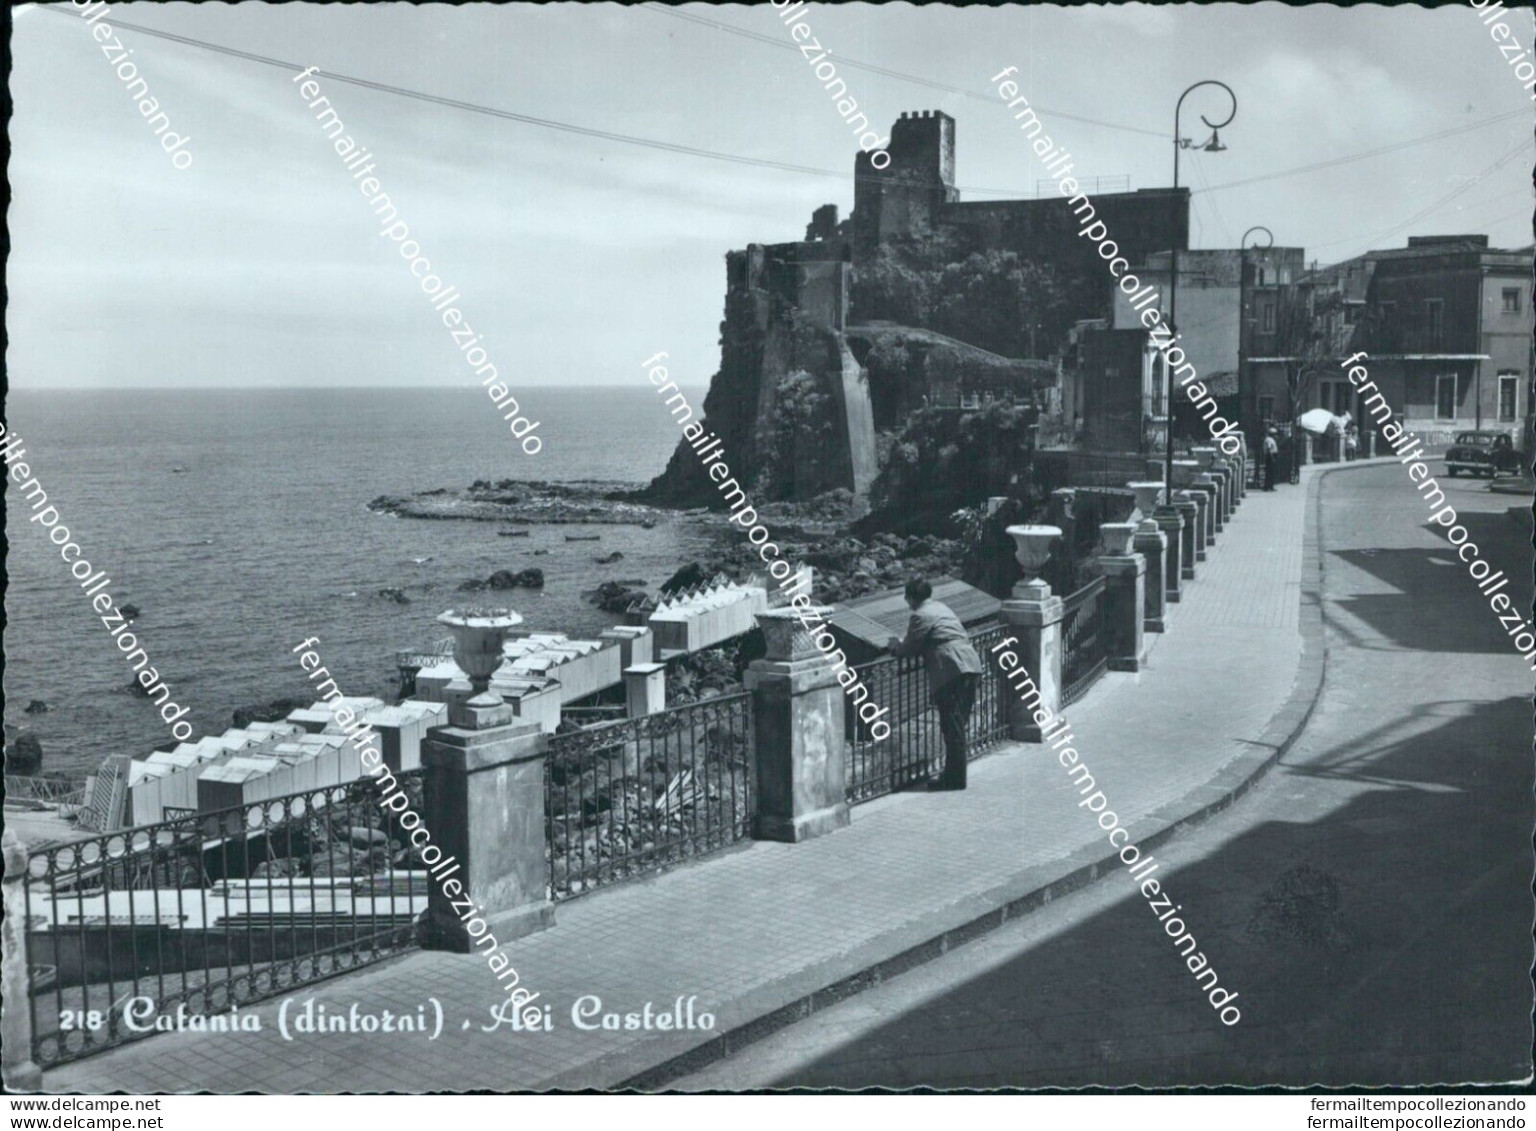 Bm609 Cartolina Catania Dintorni Aci Castello - Catania